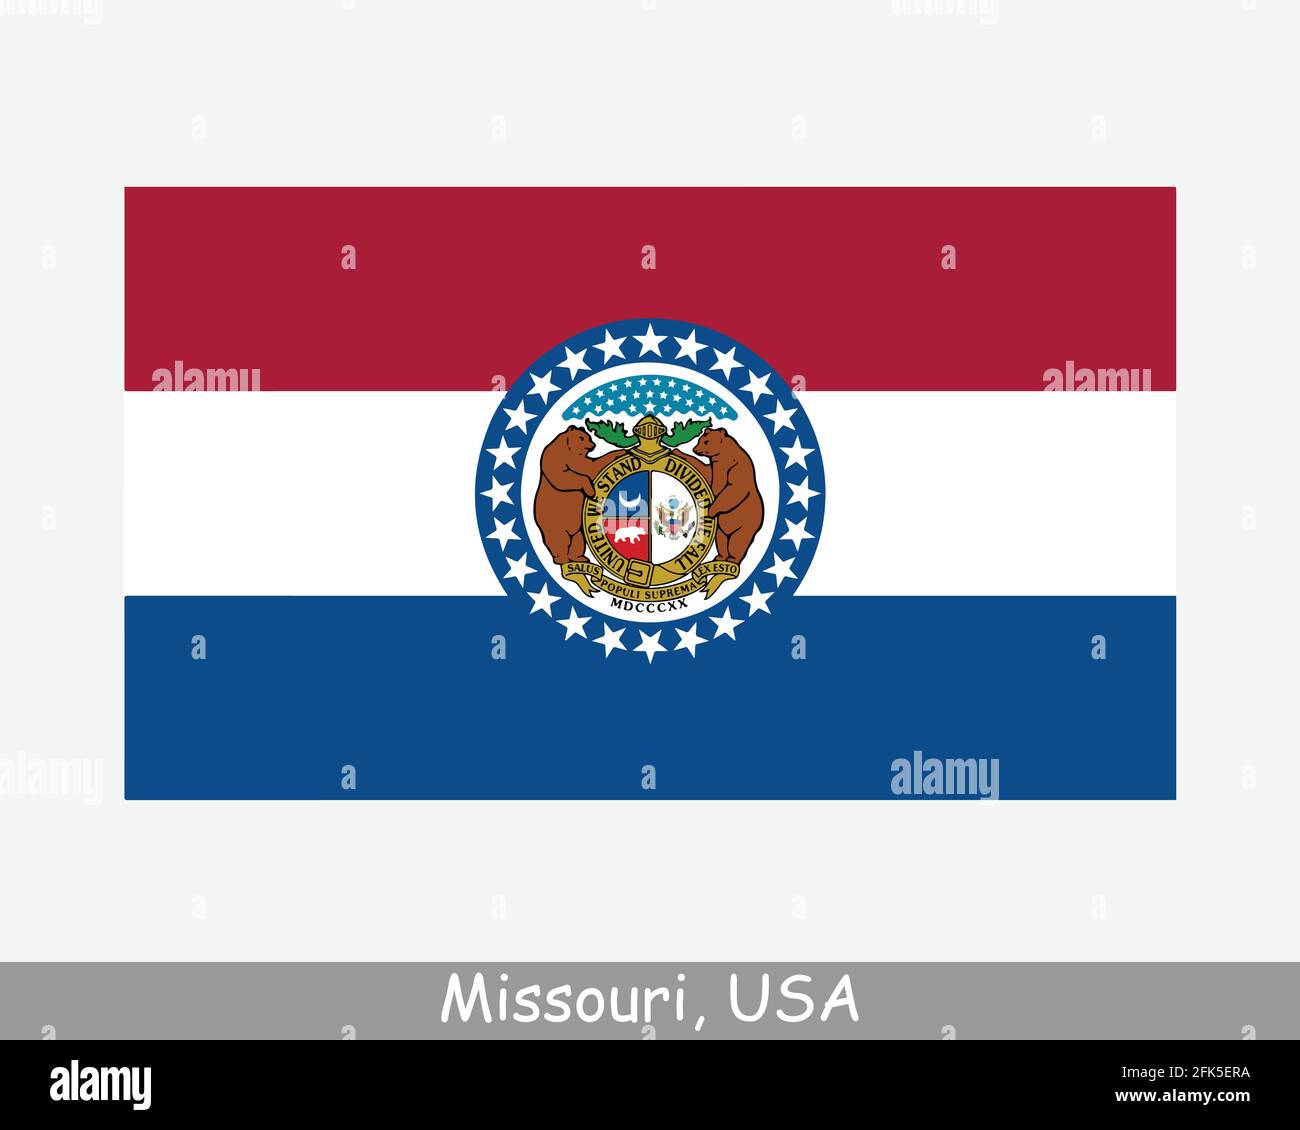 Missouri USA Staatsflagge. Flagge von MO, USA isoliert auf weißem Hintergrund. Vereinigte Staaten, Amerika, American, Vereinigte Staaten von Amerika, US-Bundesstaat. Vektor-il Stock Vektor